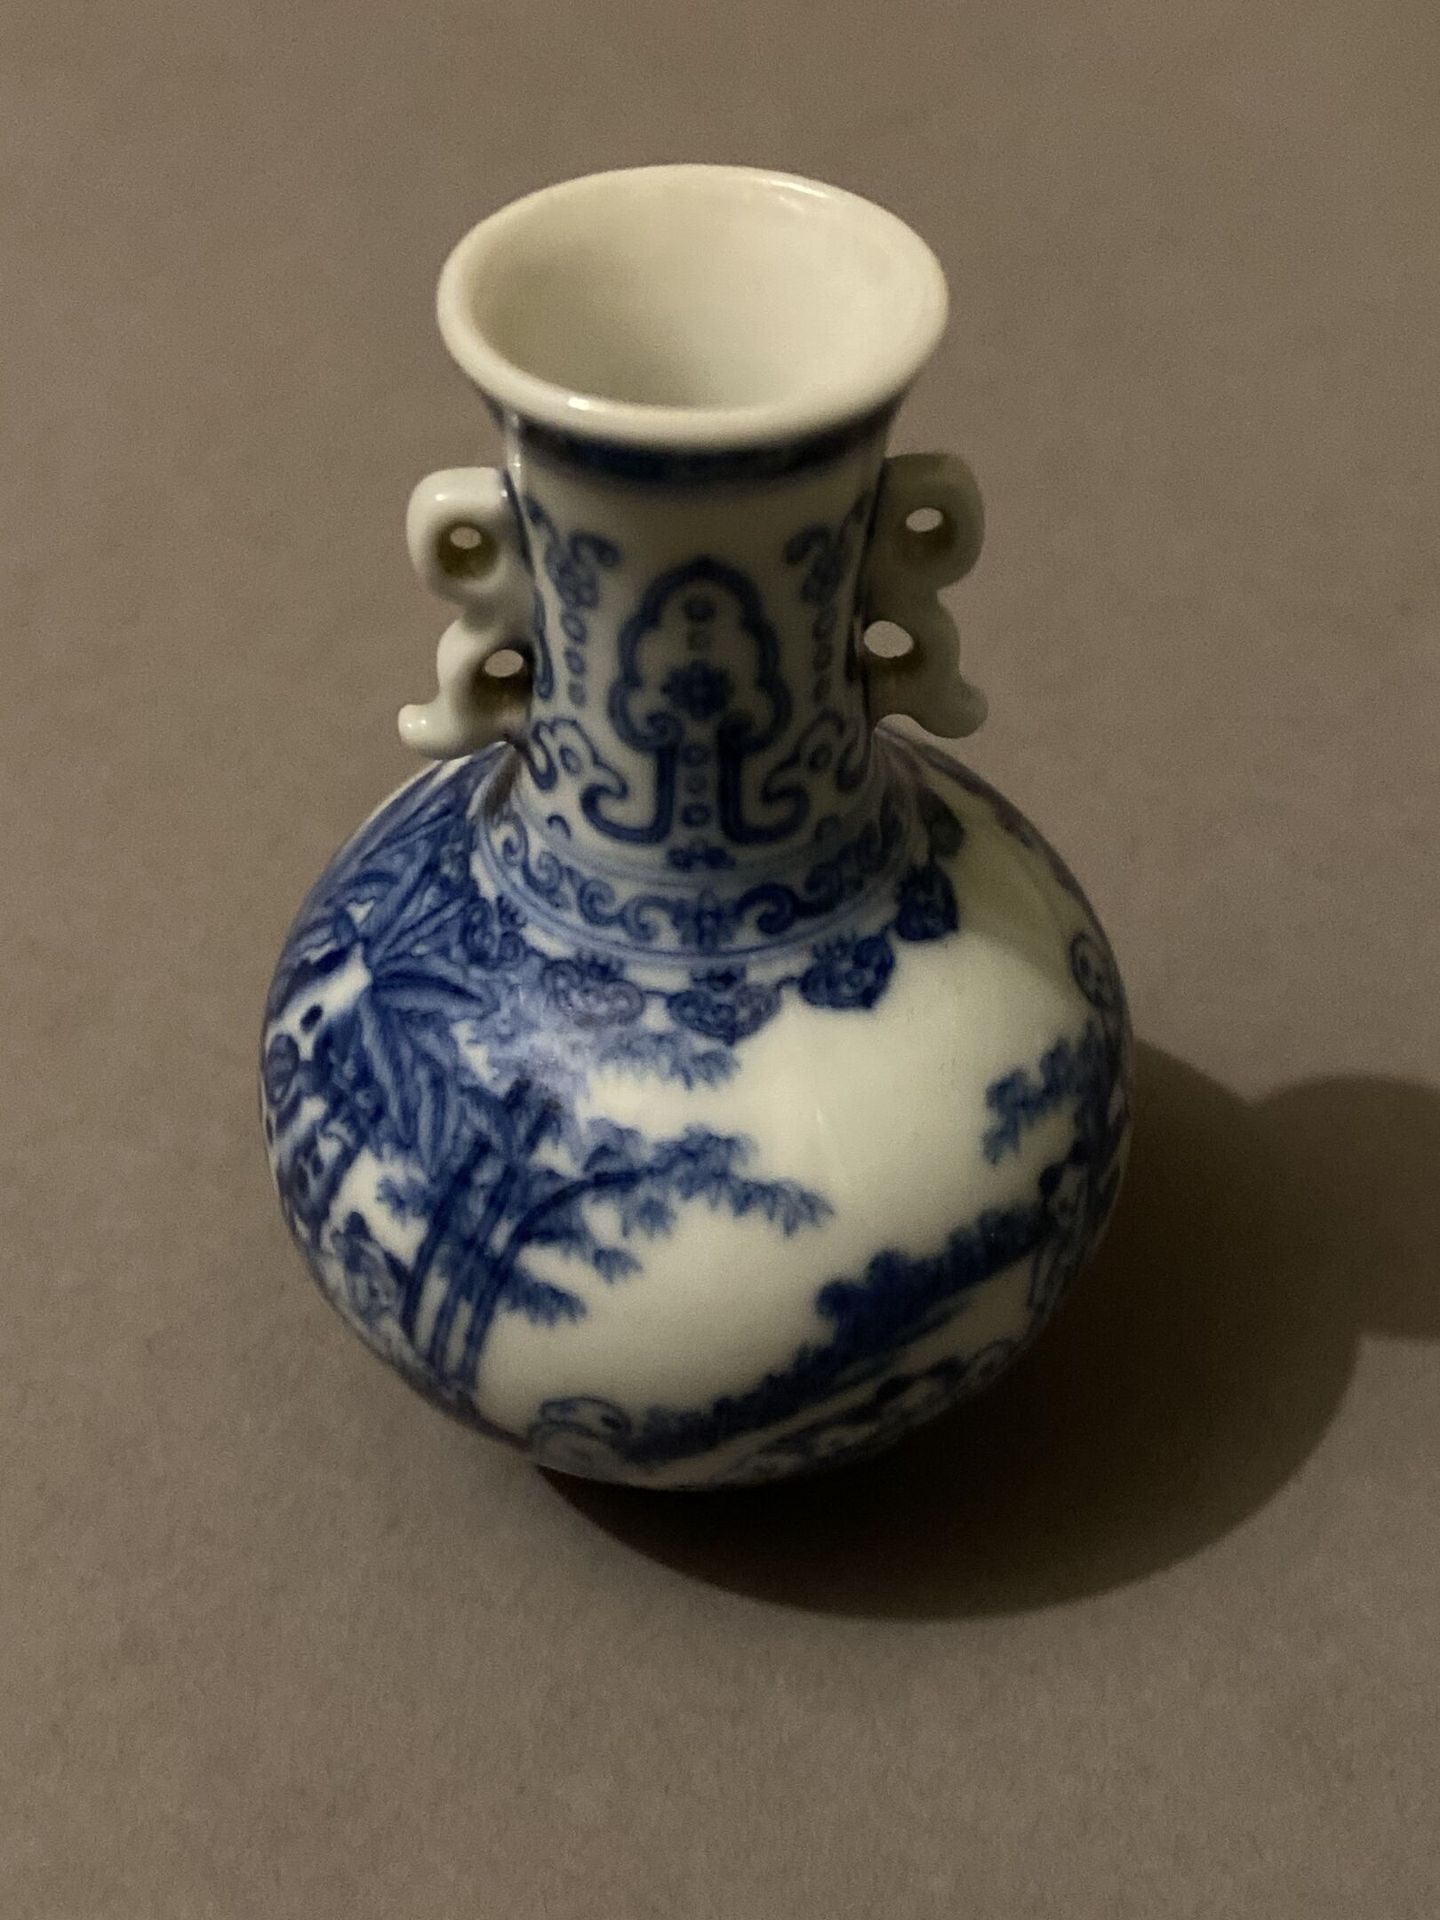 Null Kleine Vase aus blauem und weißem Porzellan.
H. 8,5 cm - L. 6 cm